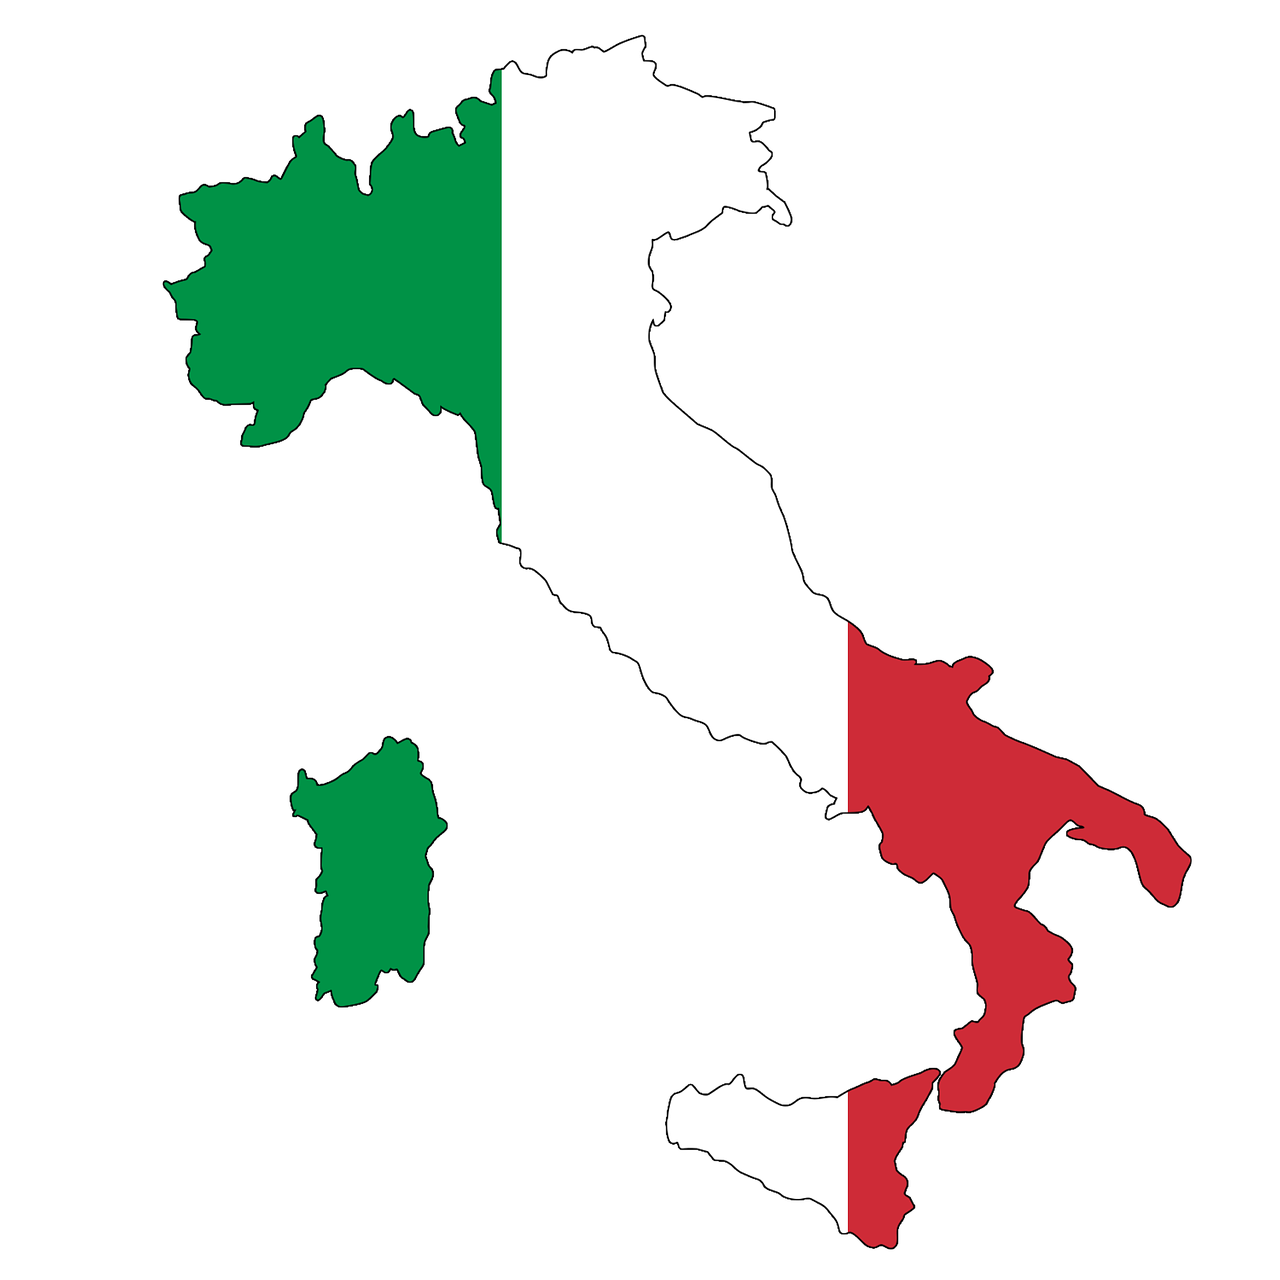 Cómo aprender italiano rápido, cursos y libros para estudiar italiano